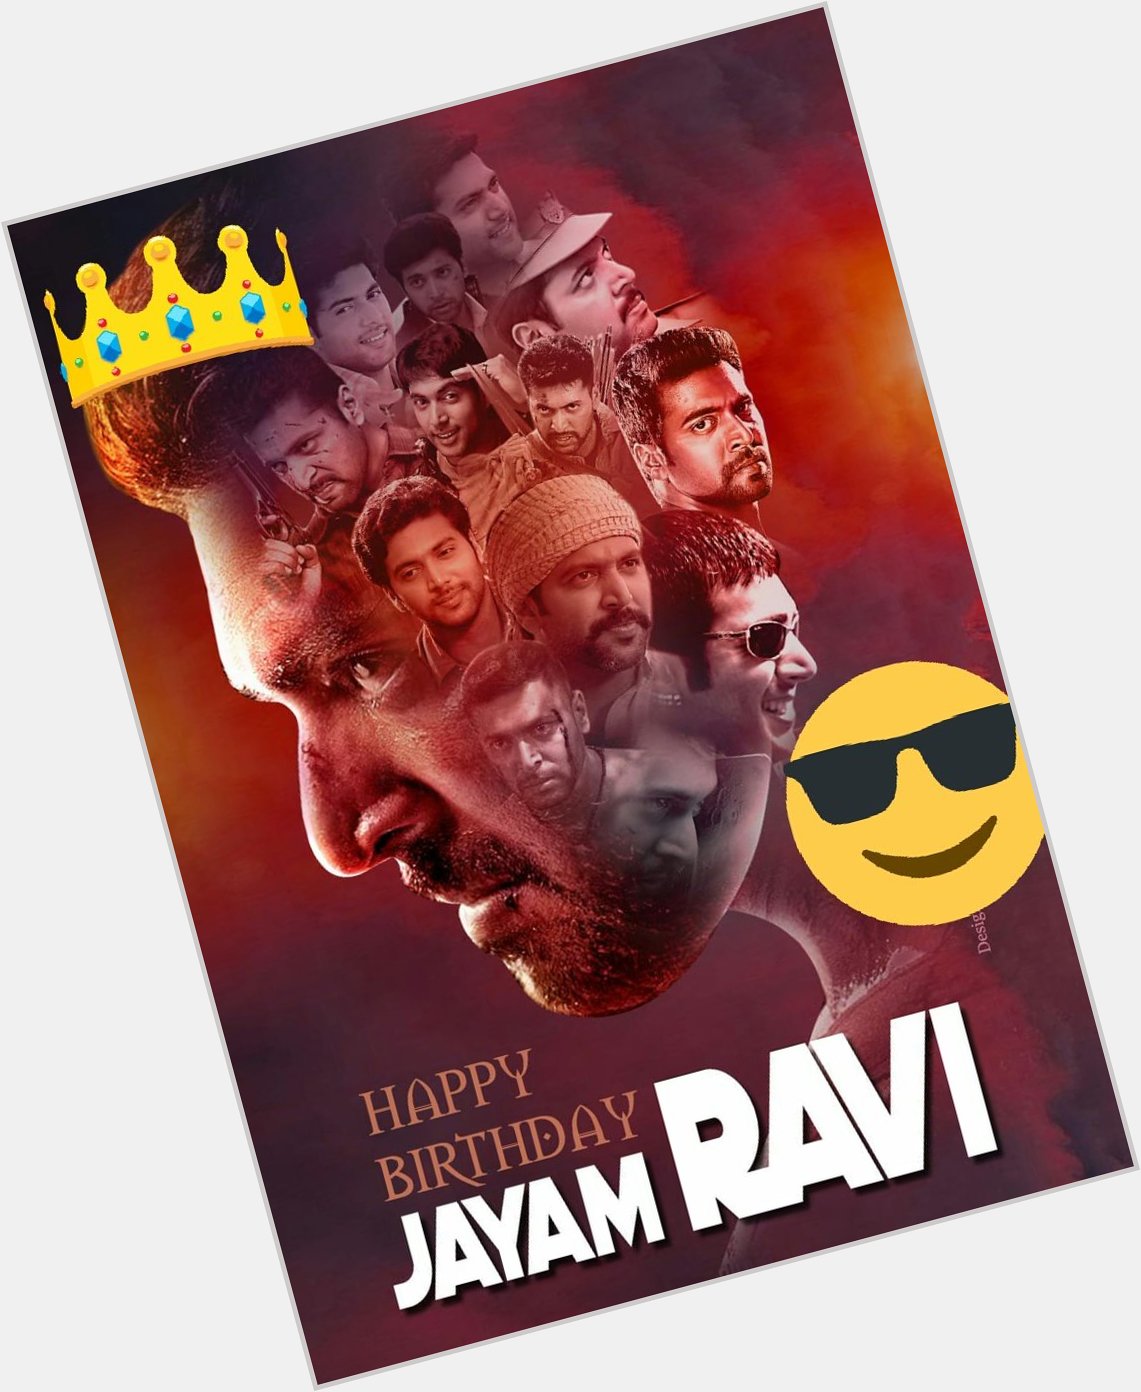 Happy birthday jayam ravi from nani anna fans    